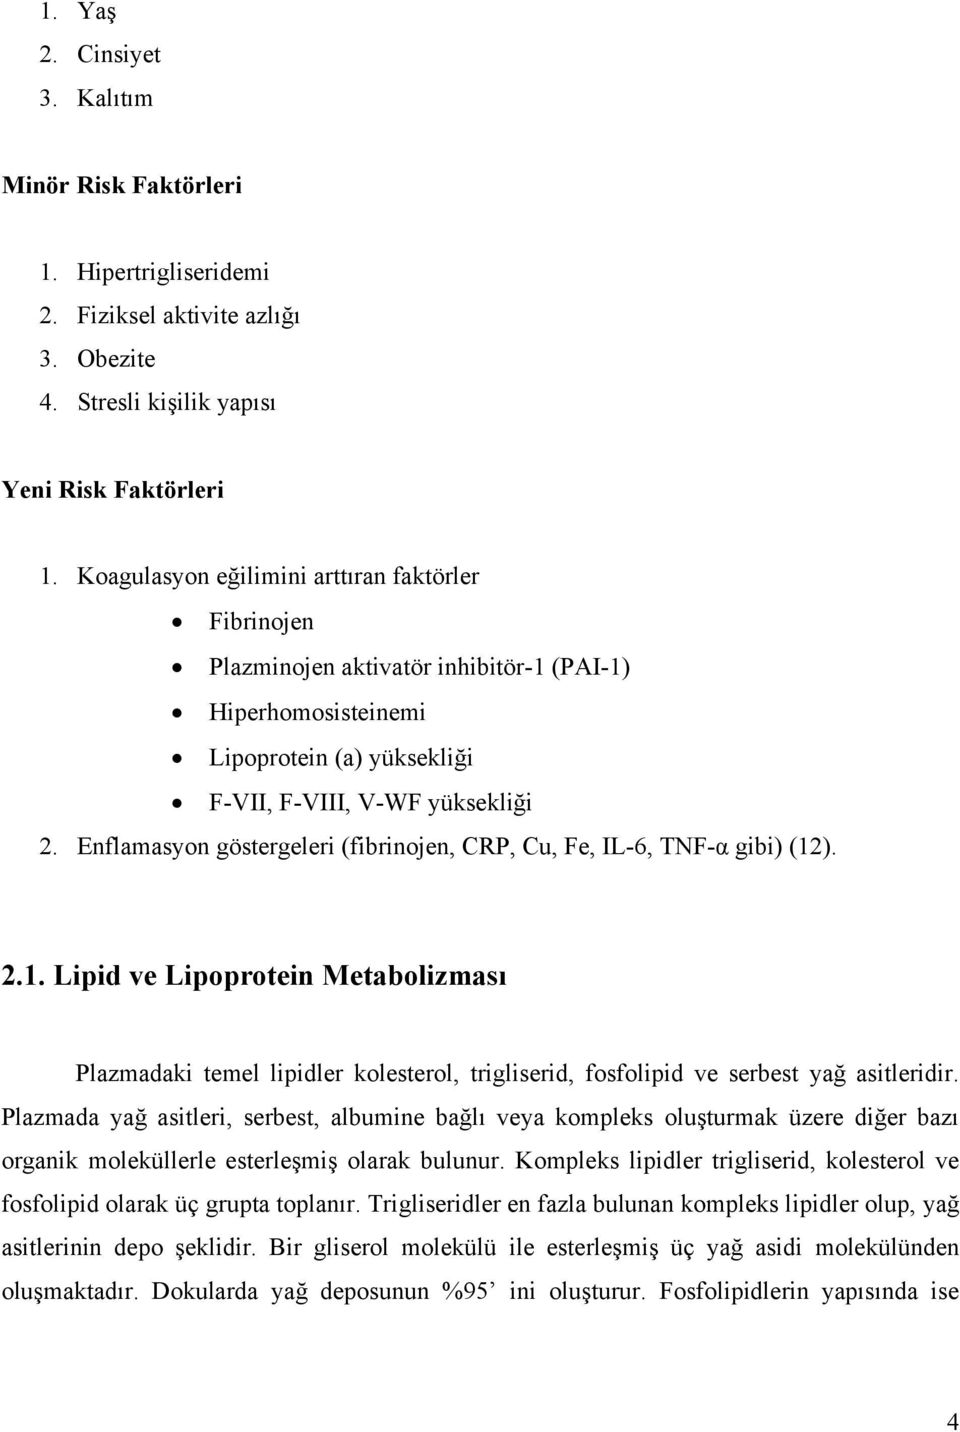 Enflamasyon göstergeleri (fibrinojen, CRP, Cu, Fe, IL-6, TNF-α gibi) (12). 2.1. Lipid ve Lipoprotein Metabolizması Plazmadaki temel lipidler kolesterol, trigliserid, fosfolipid ve serbest yağ asitleridir.